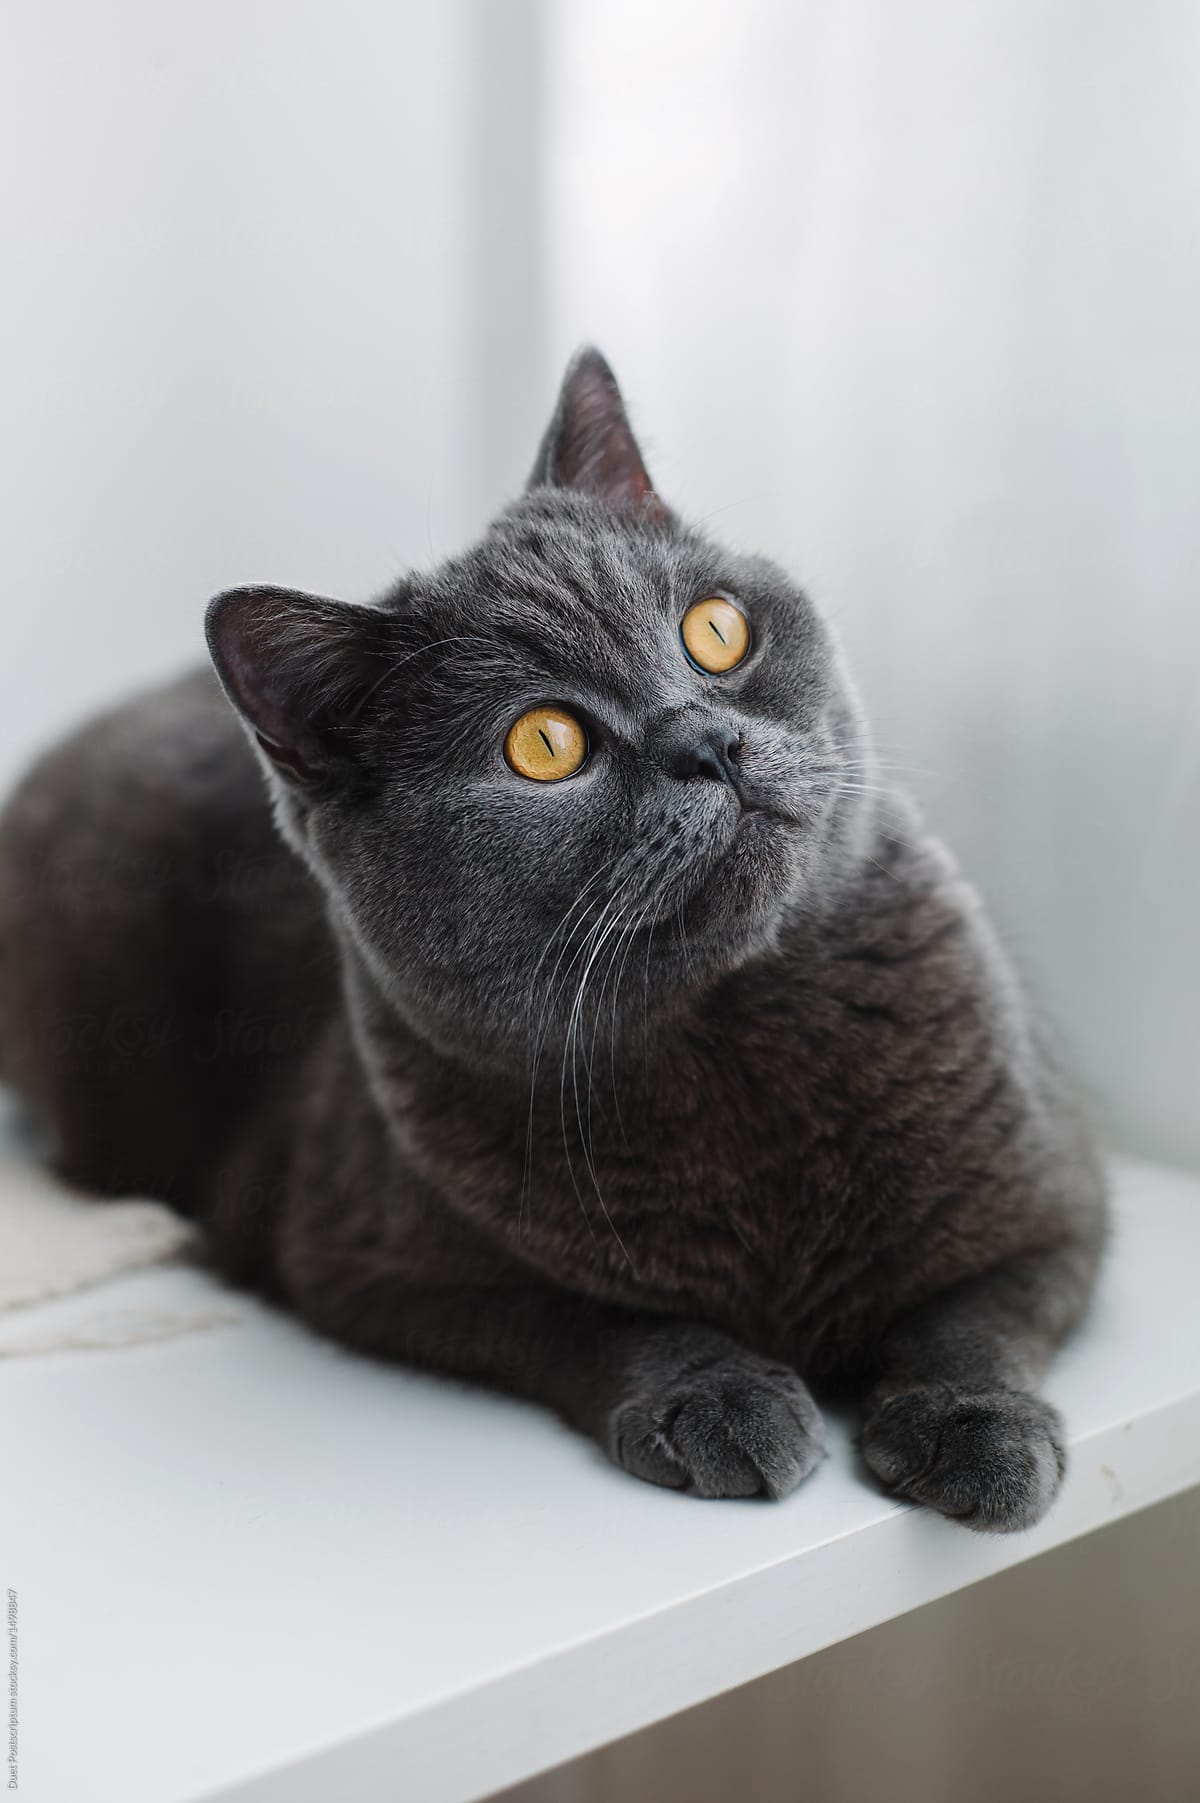 Cute gray cat lying